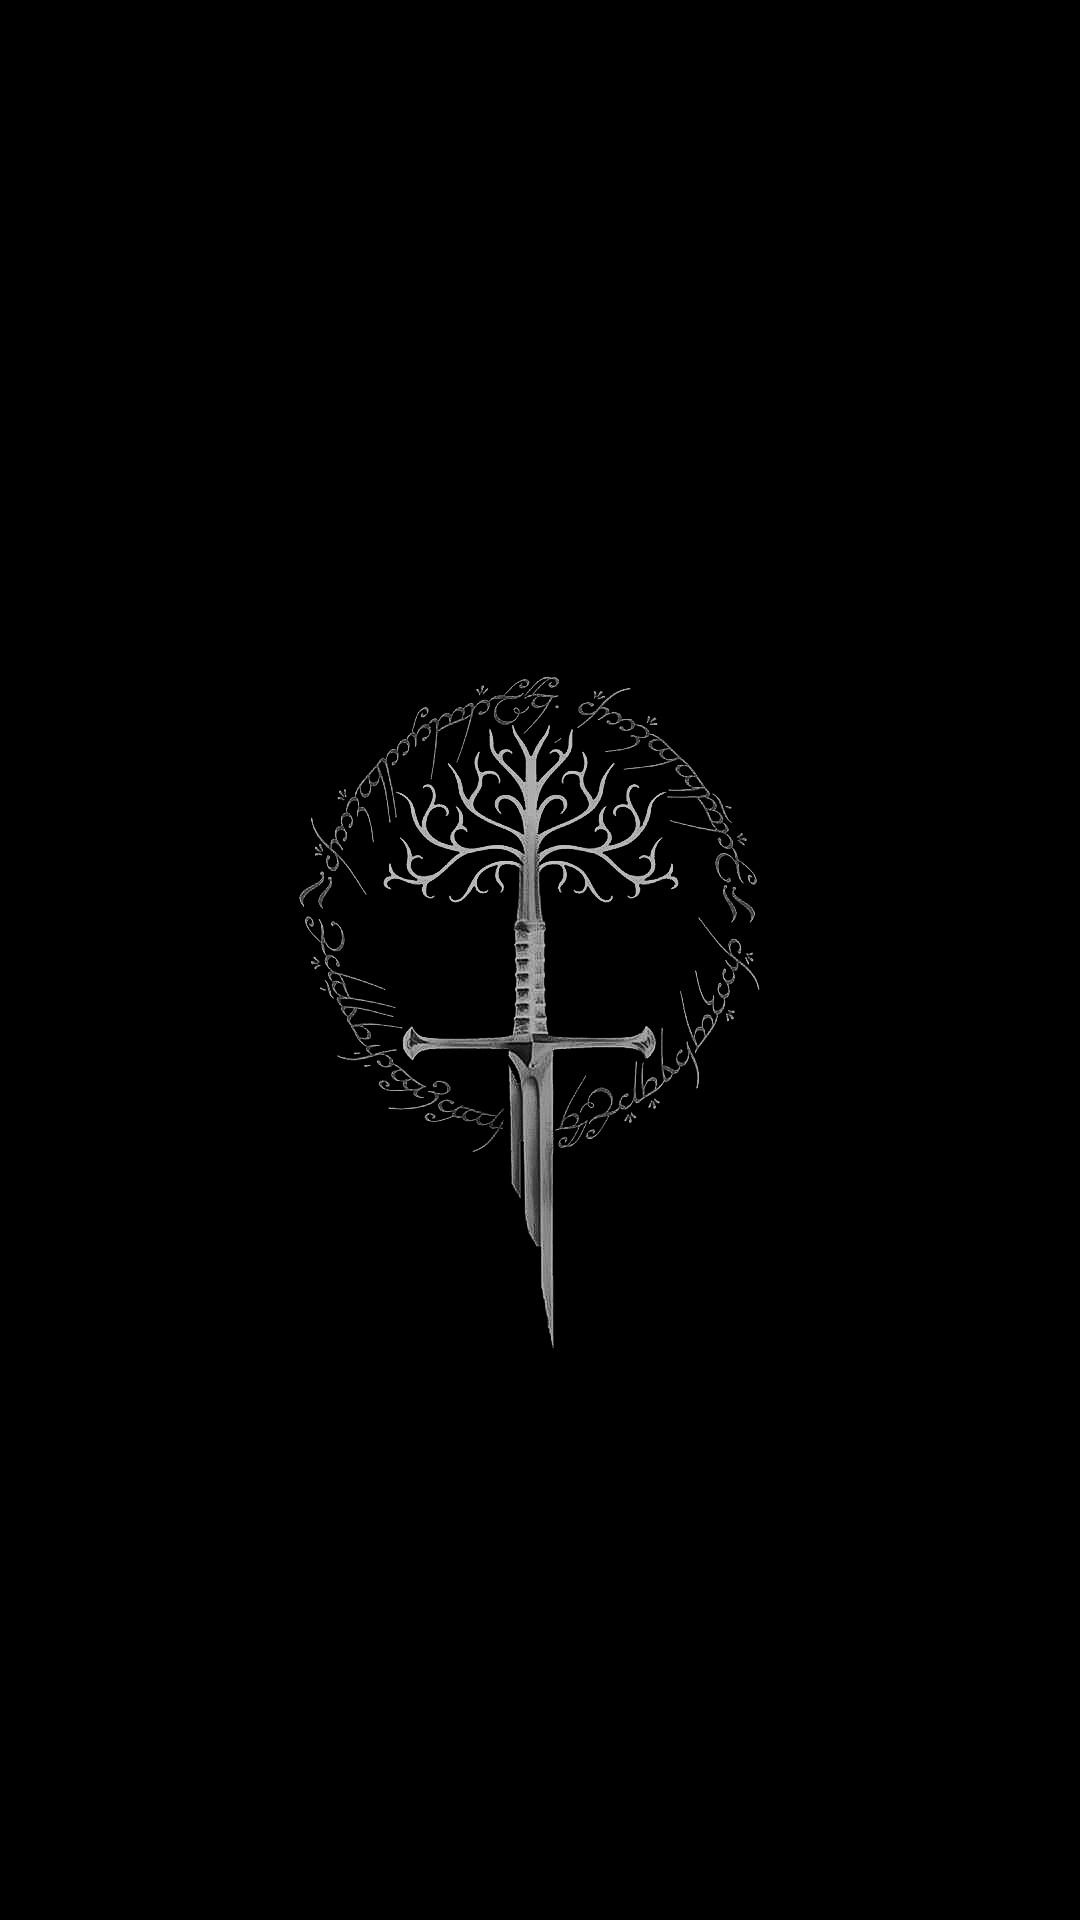 Narsil Sword, White Tree symbolism, Ramoled background, Iconic weapon, 1080x1920 Full HD Phone